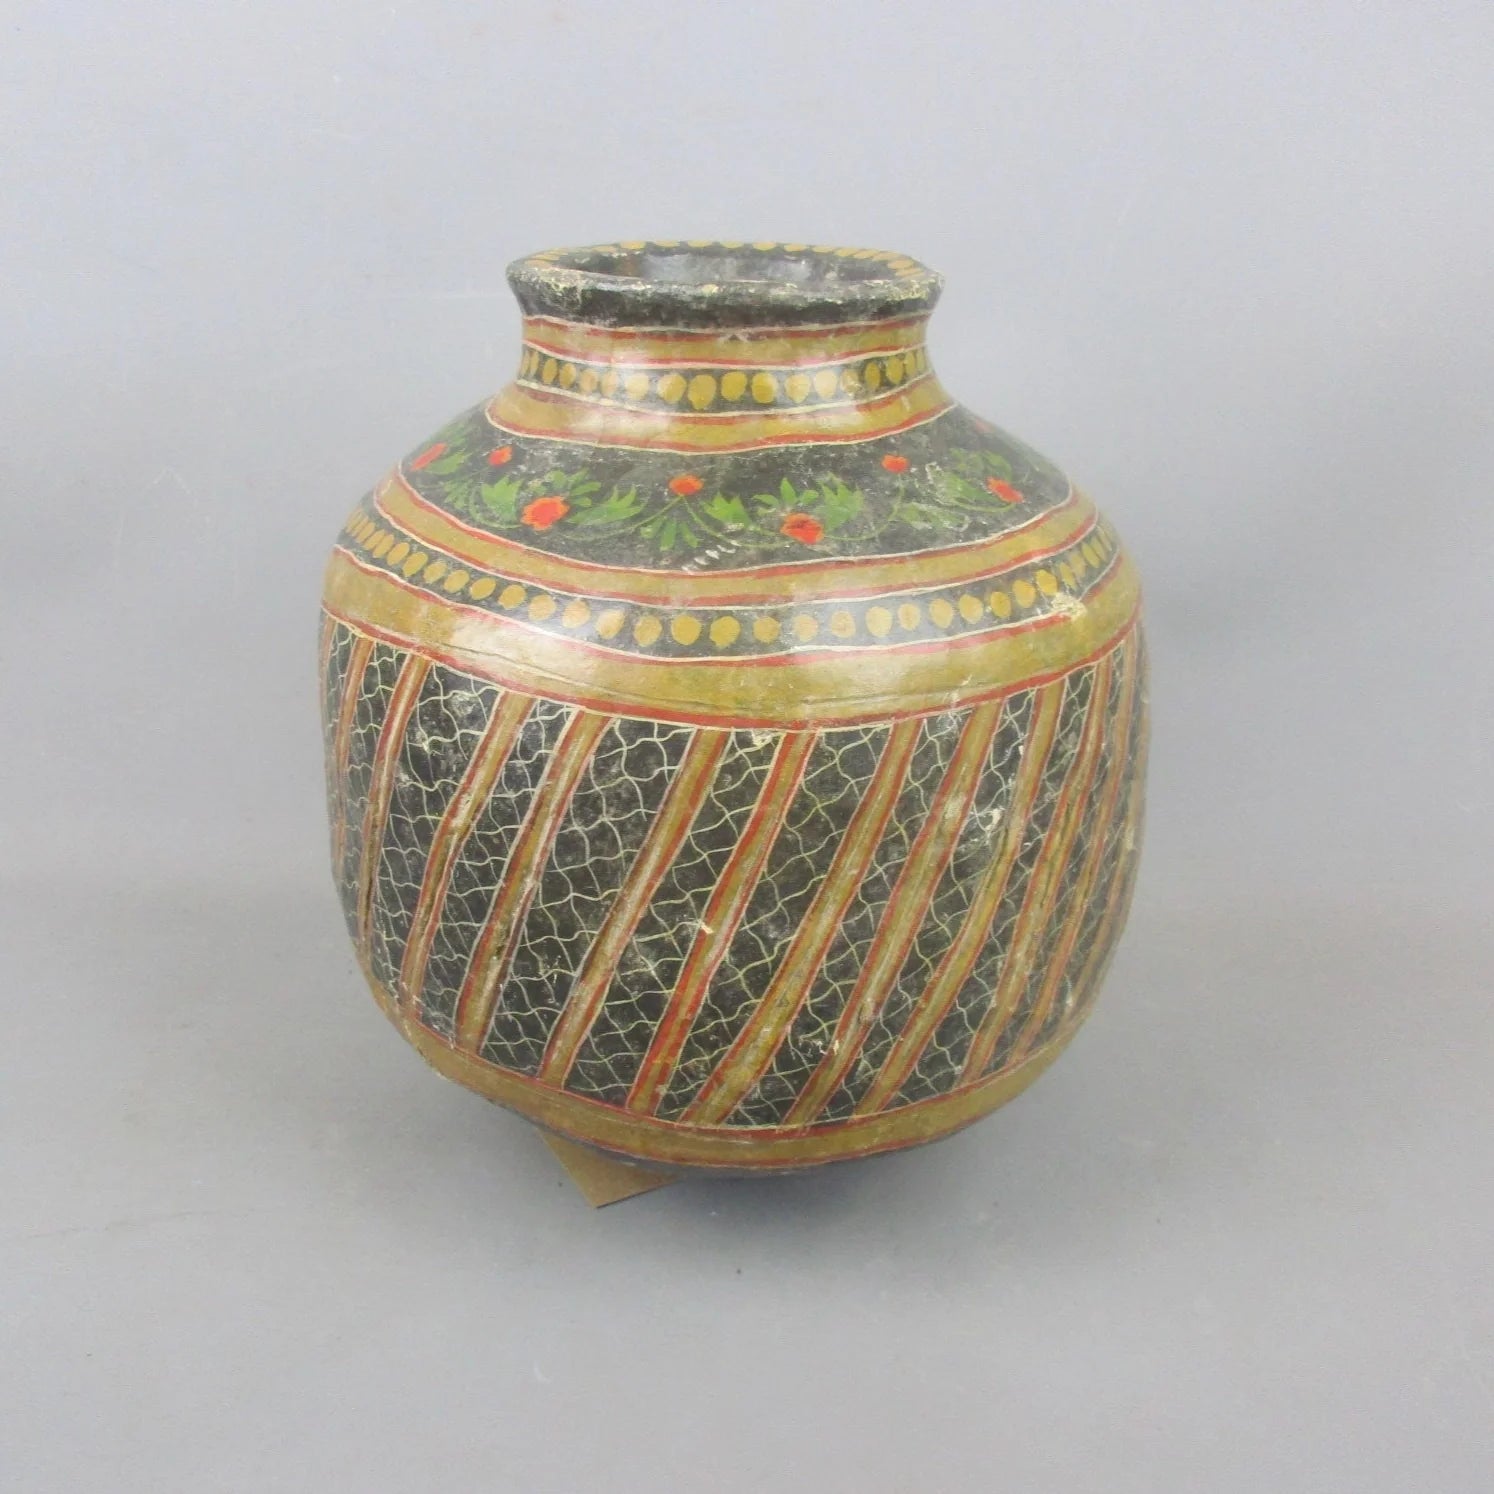 Hand Painted Floral Design Indian Papier Mache Vase Antique c1880